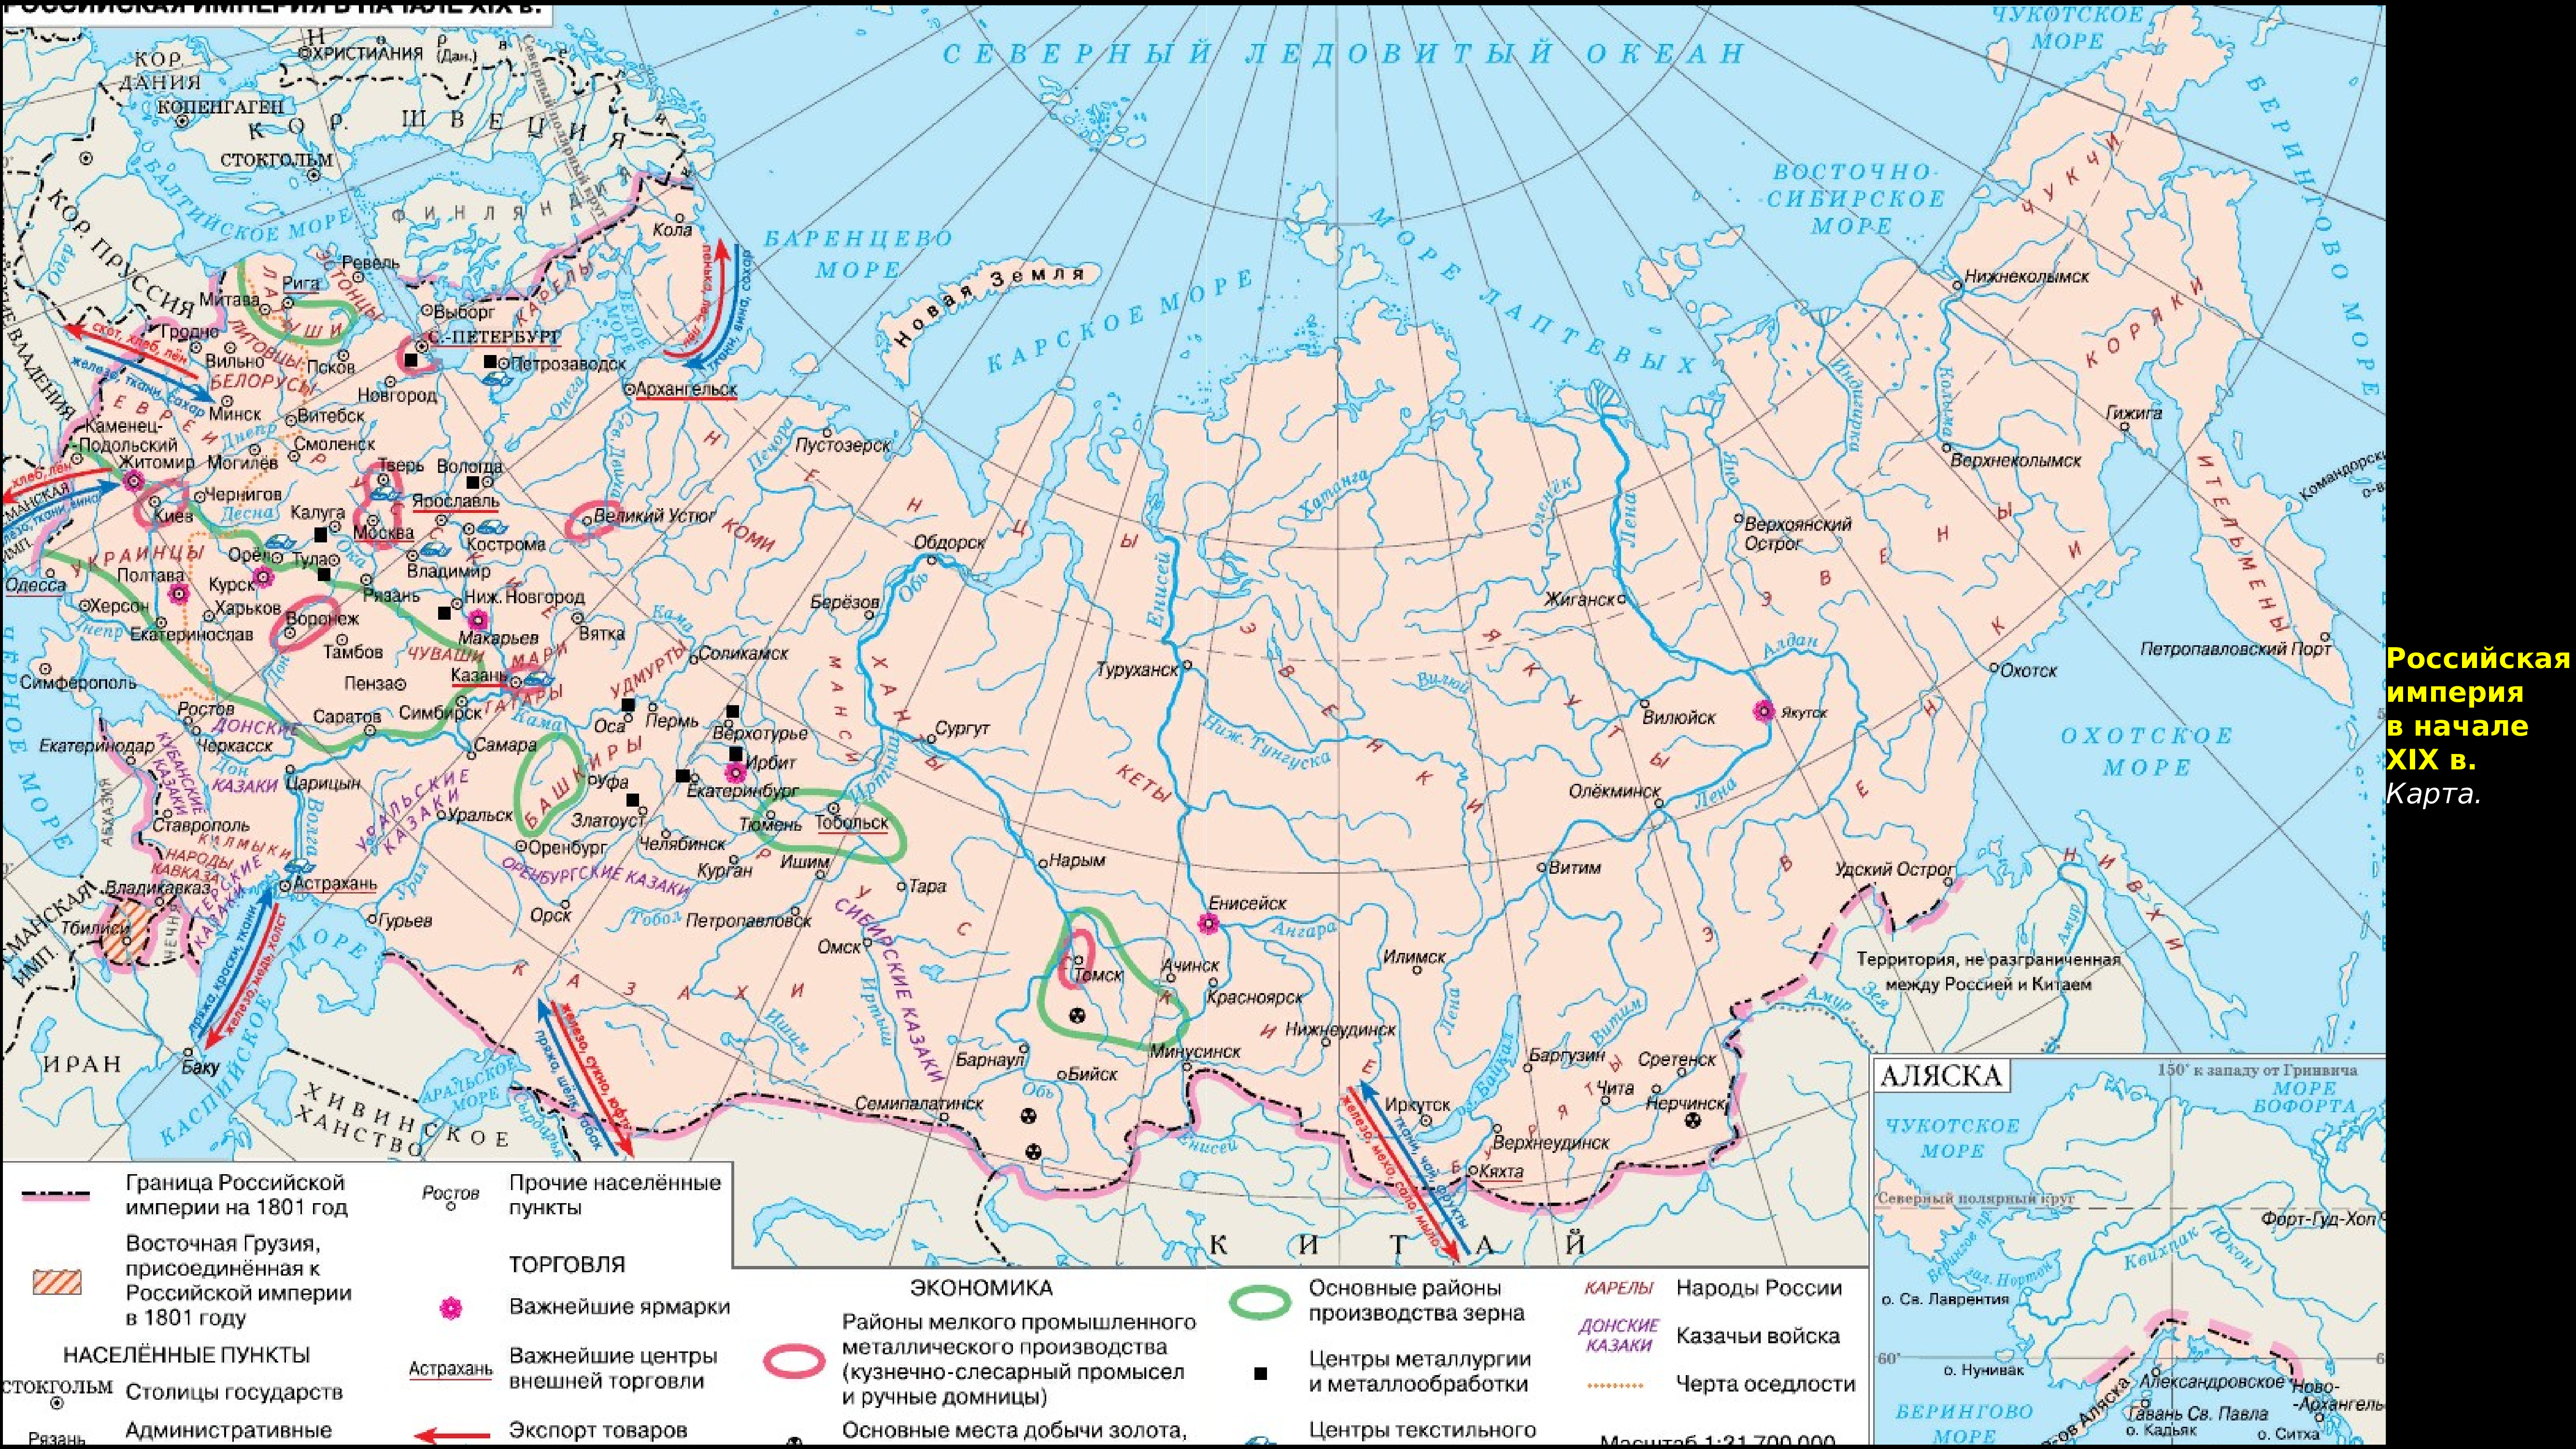 Территории присоединенные александром 1 карта